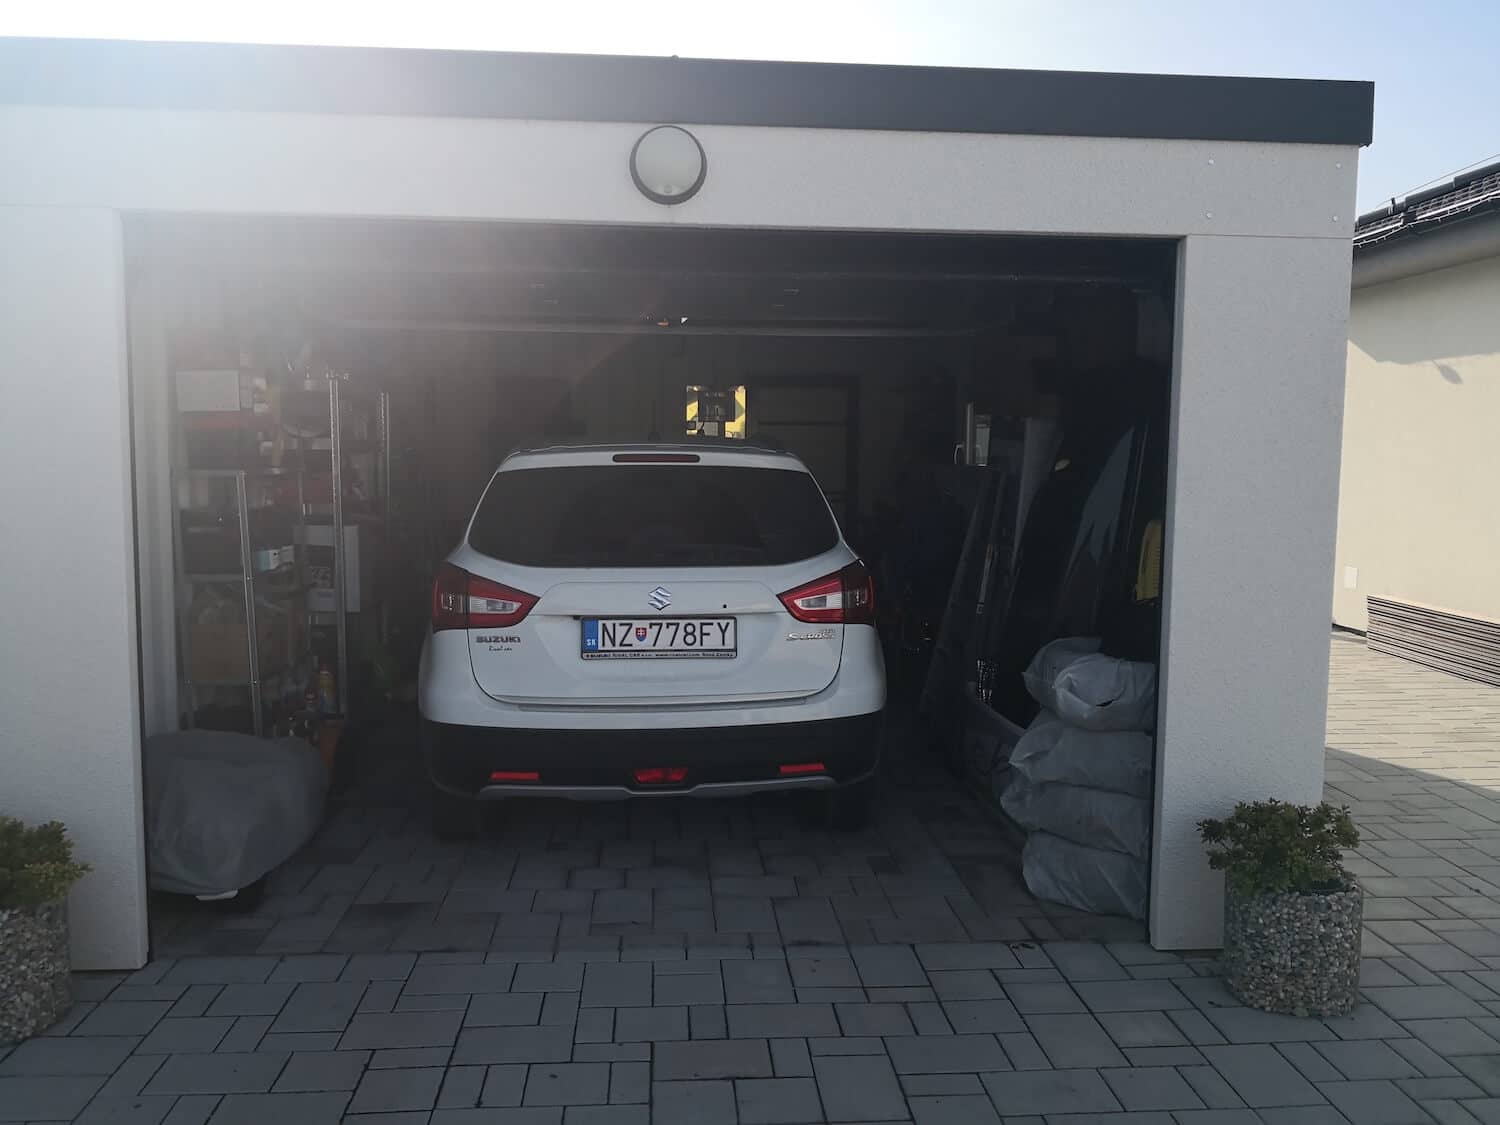 Otvorená garáž s autom vo vnútri